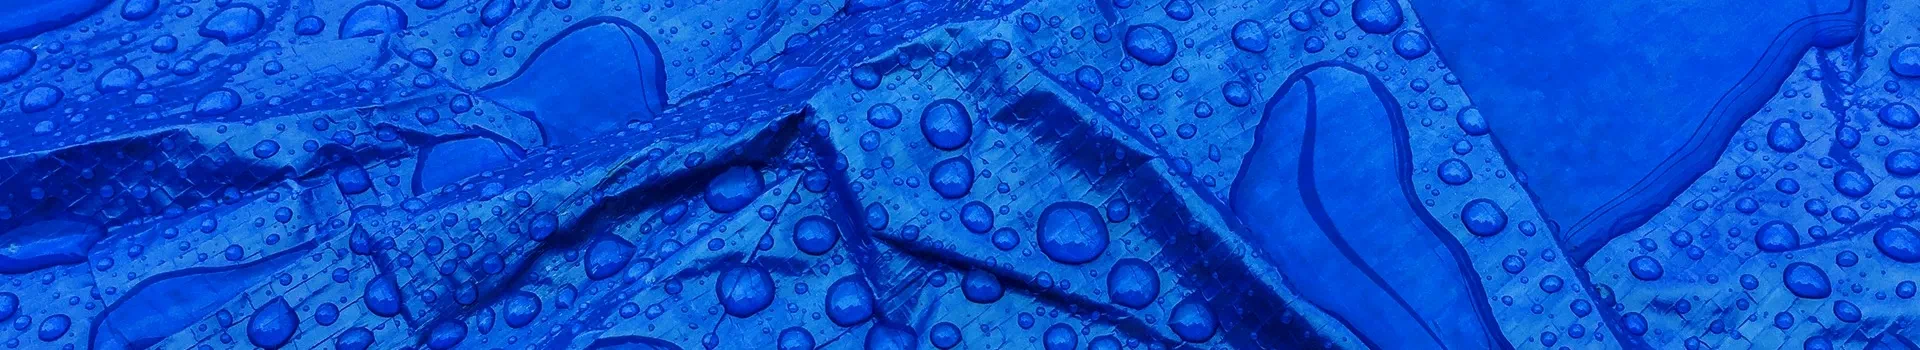 banner - plandeka niebieska przeciwdeszczowa